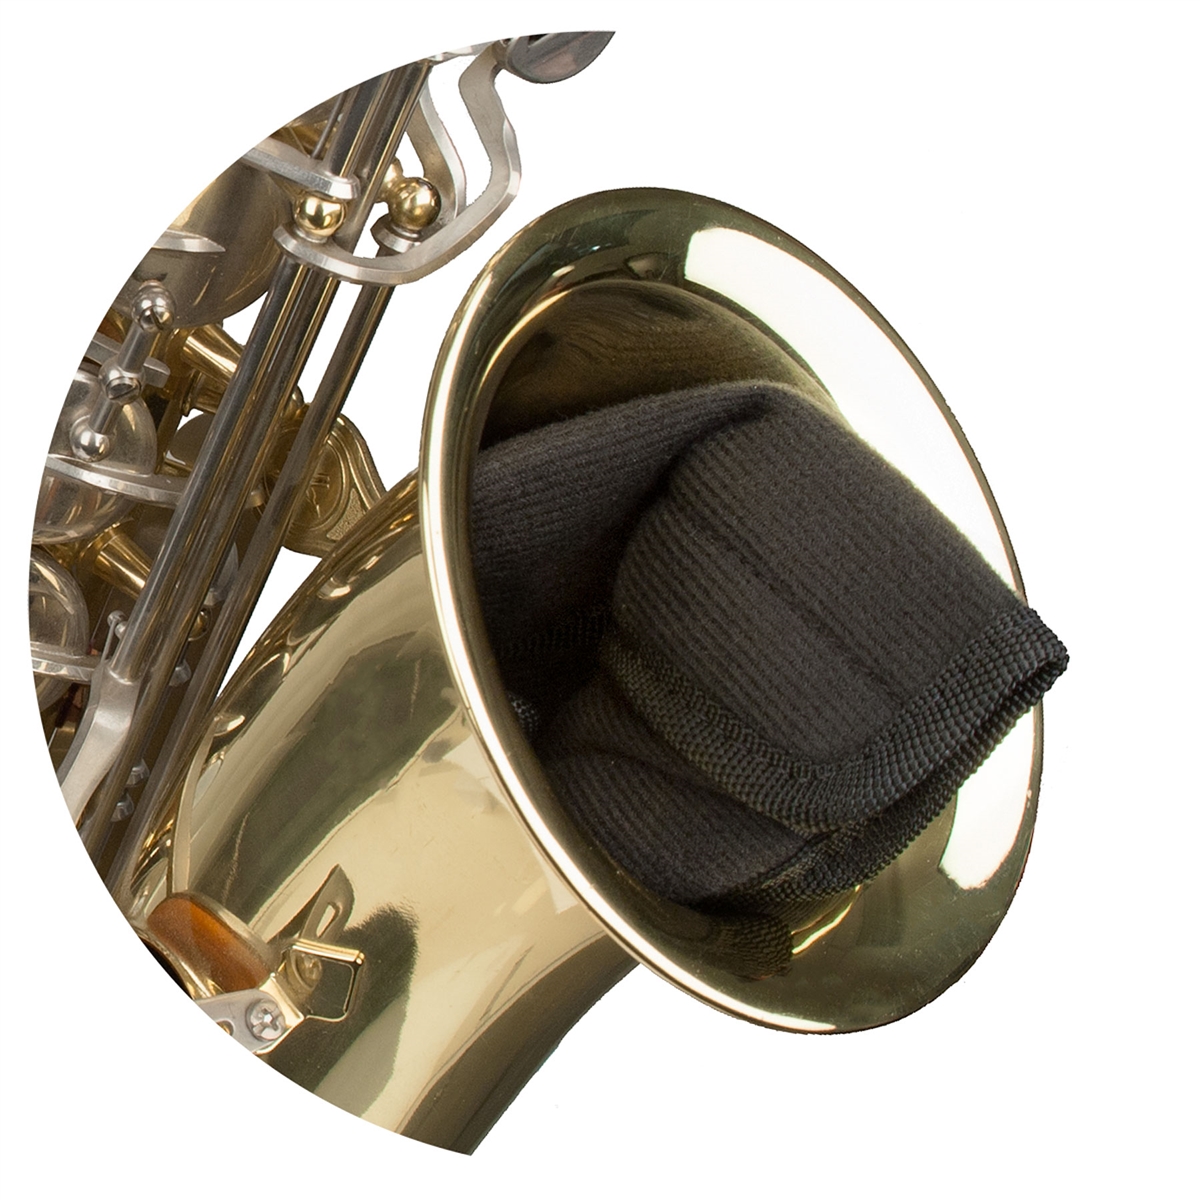 Protec A303 - Etui für S-Bogen und Mundstück - Alt-/Tenor Saxophon